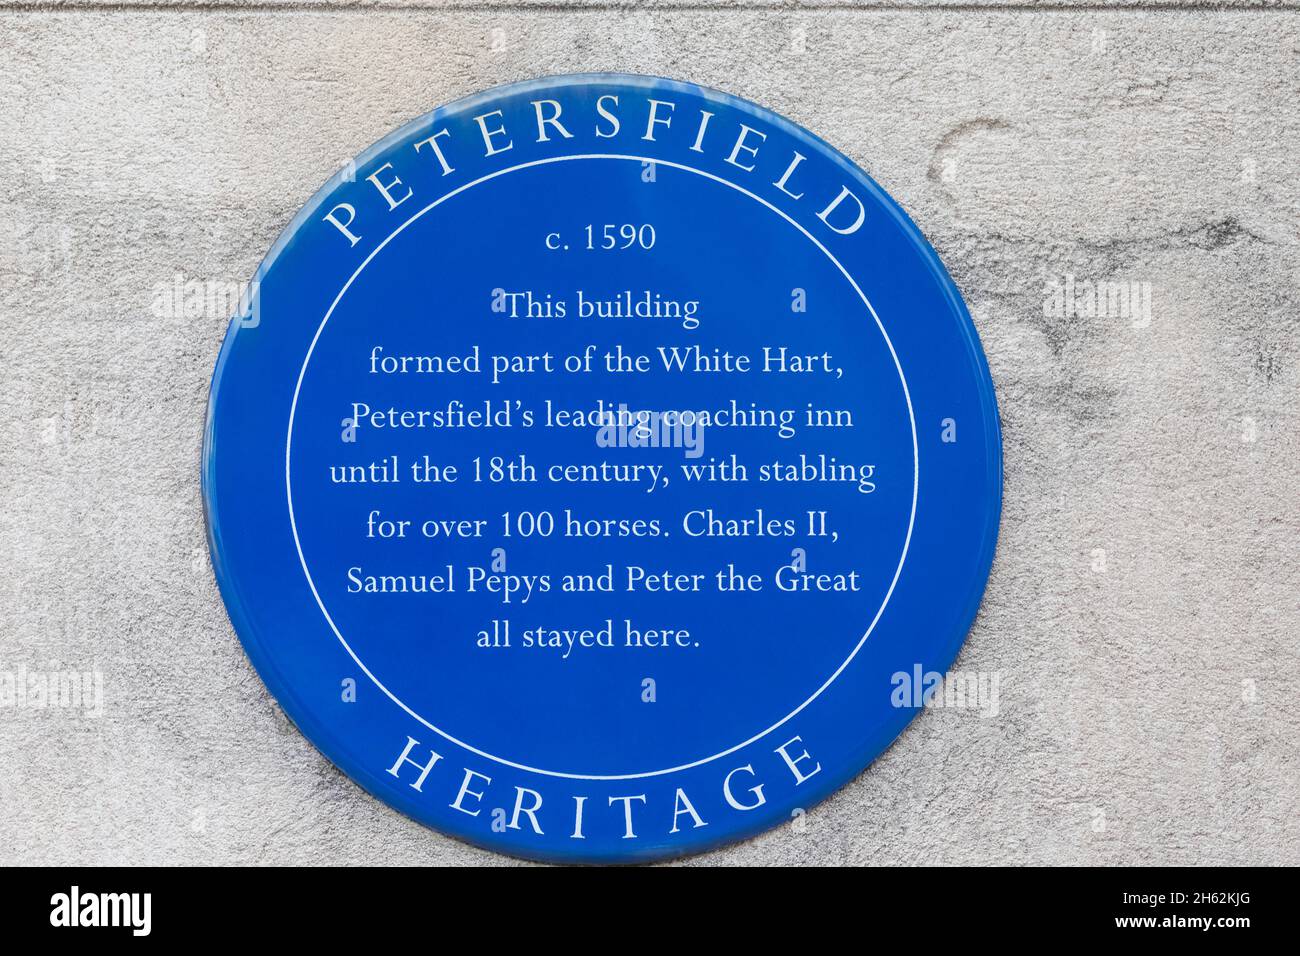 angleterre, hampshire, petersfield, plaque bleue indiquant l'histoire d'un bâtiment qui faisait autrefois partie de l'entraînement de premier plan de petersfield dans le cœur blanc Banque D'Images